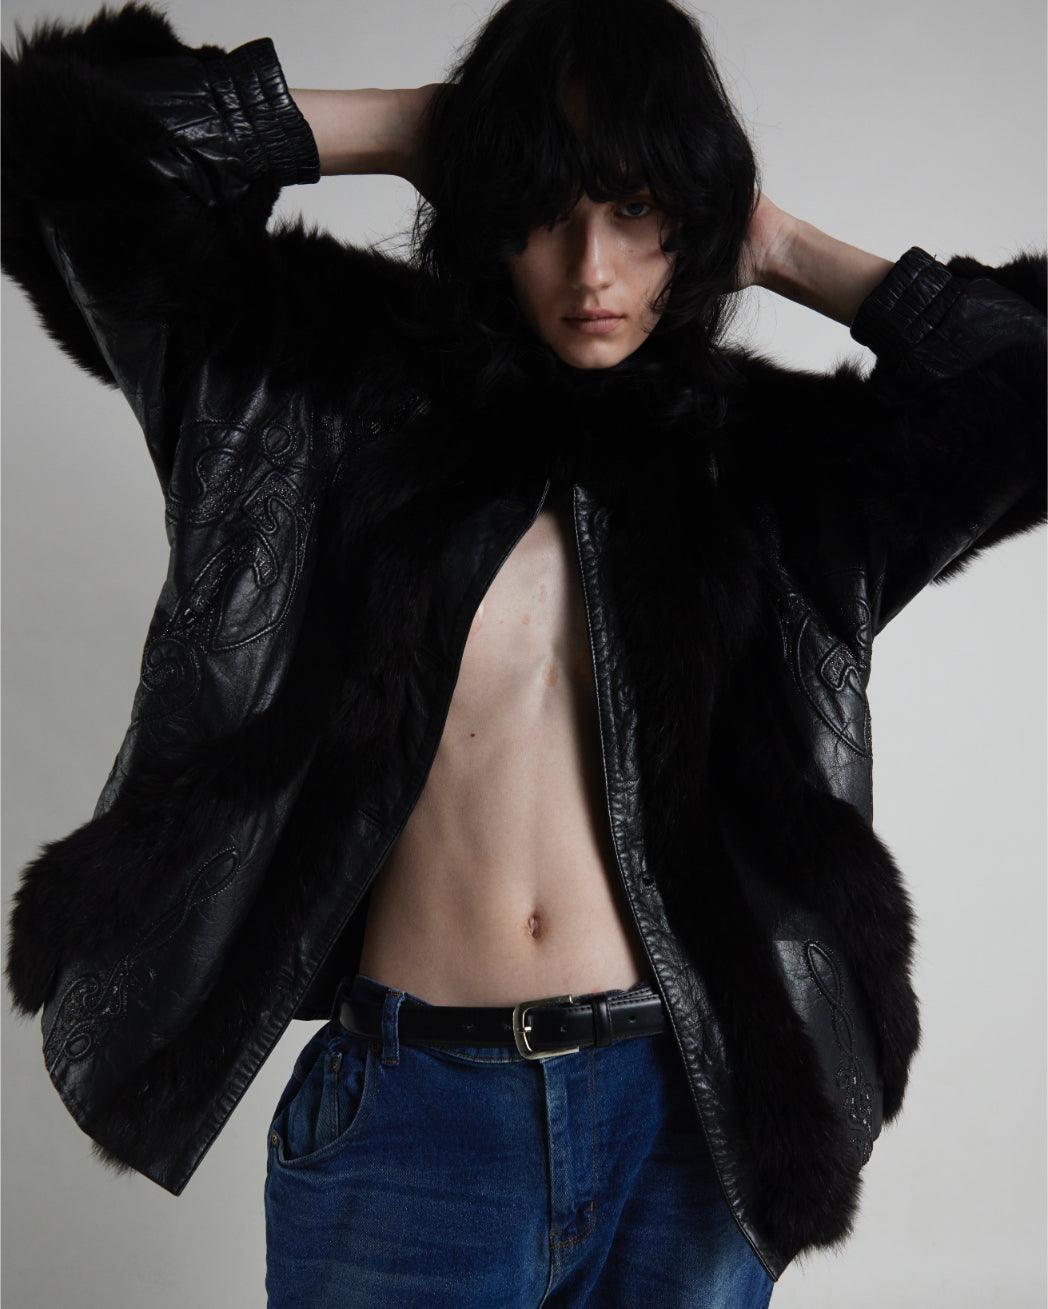 Vintage 1980s Black Leather Jacket With Fur Details - WŪHAŪS